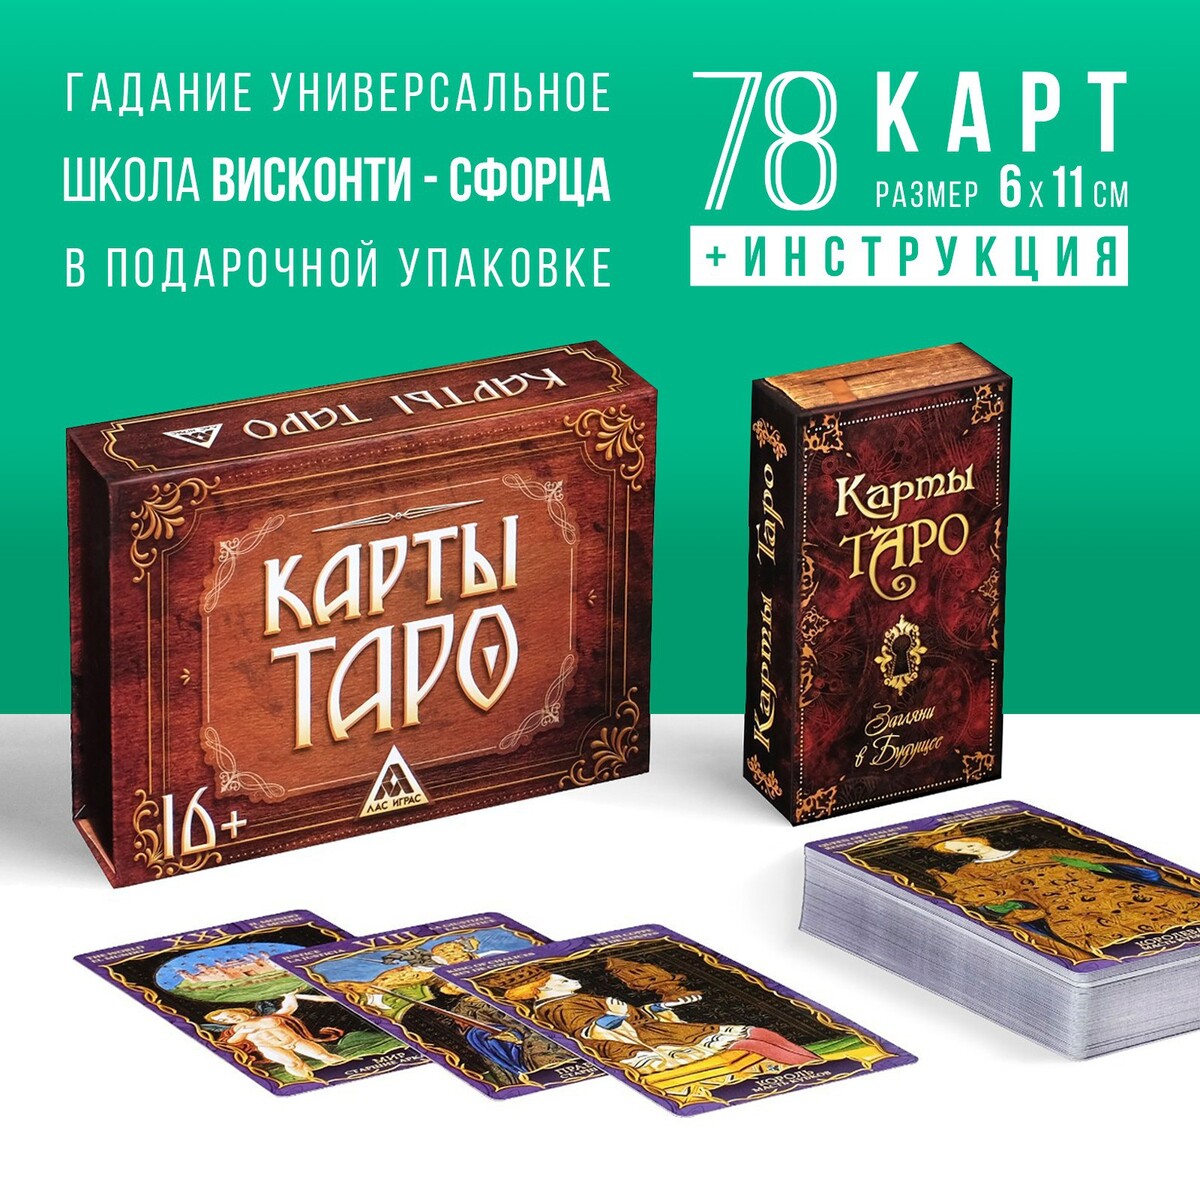 Таро в подарочной коробке ЛАС ИГРАС 0452393: купить за 460 руб в интернетмагазине с бесплатной доставкой